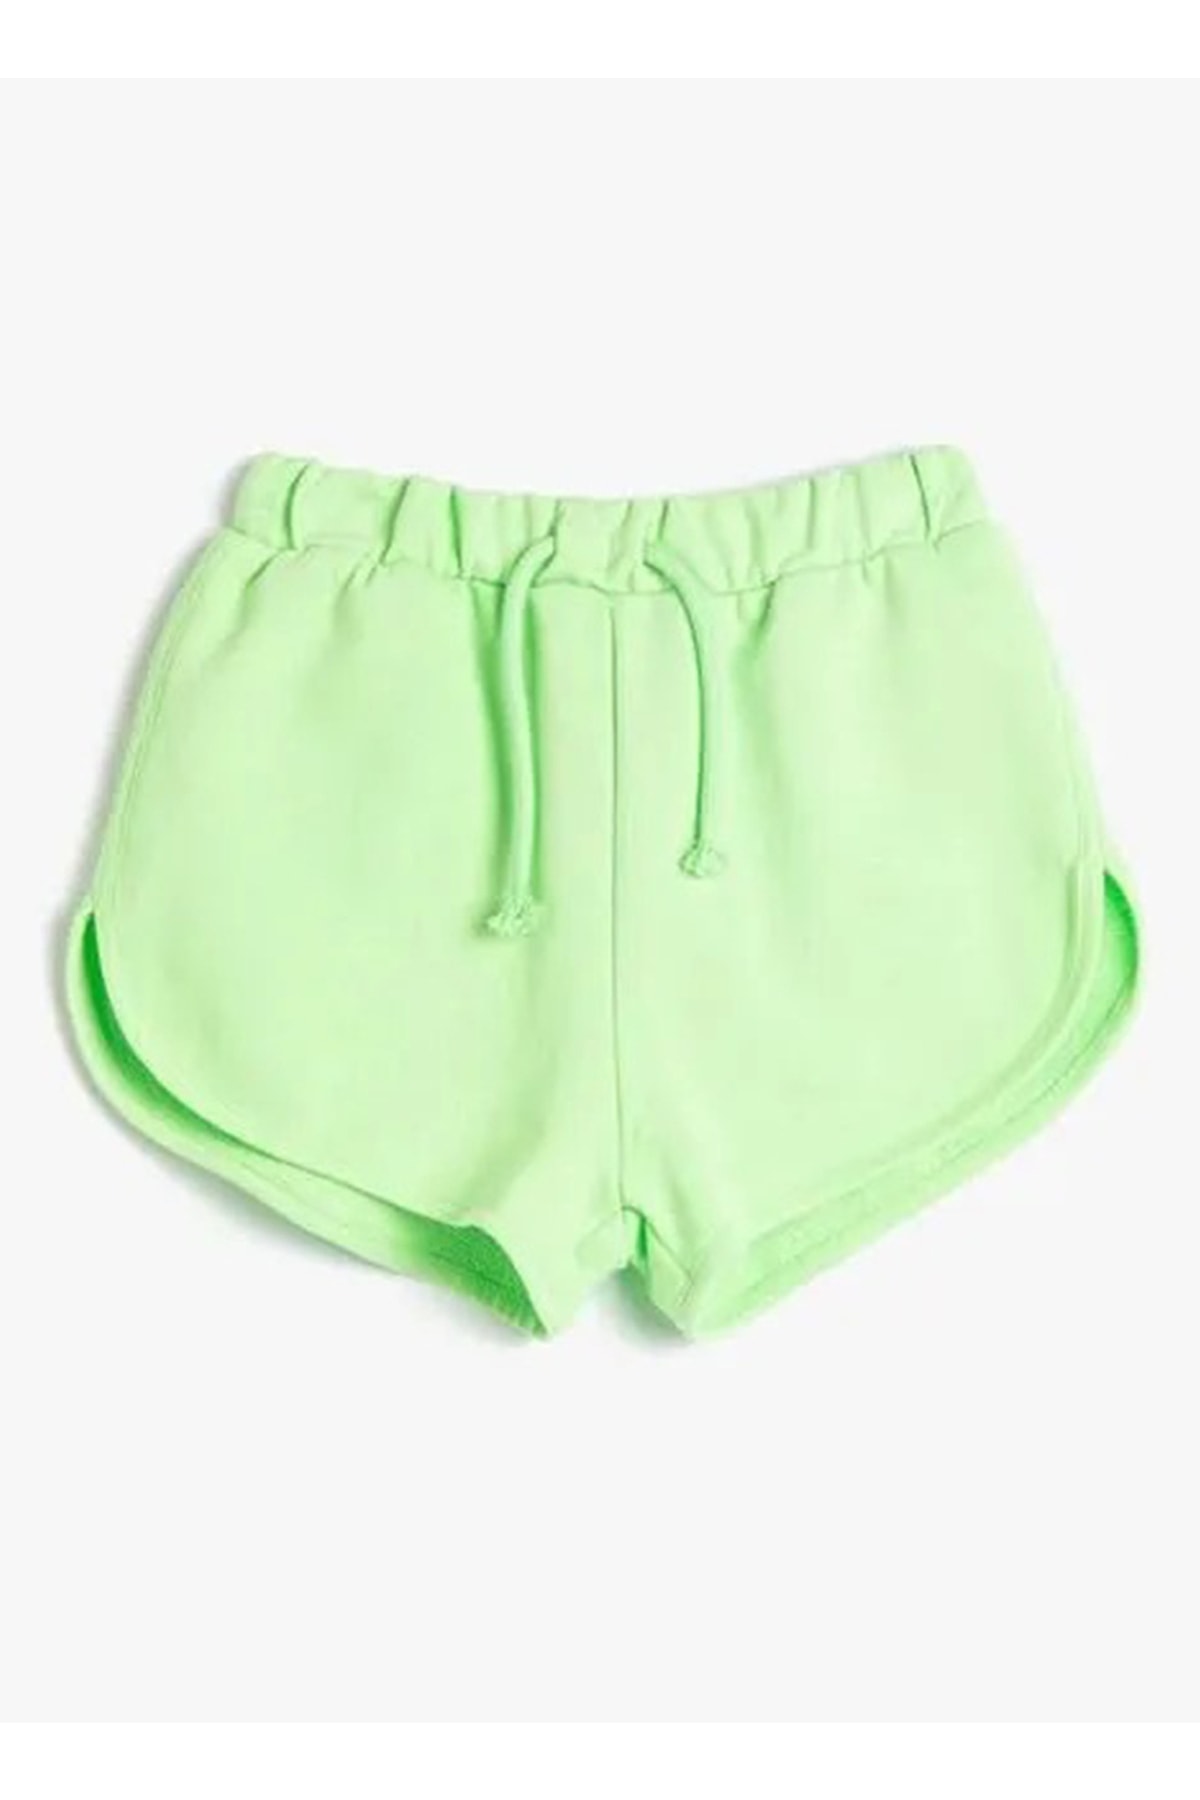 Koton Tied Waist Normal Green Girls' Shorts 3skg40058ak